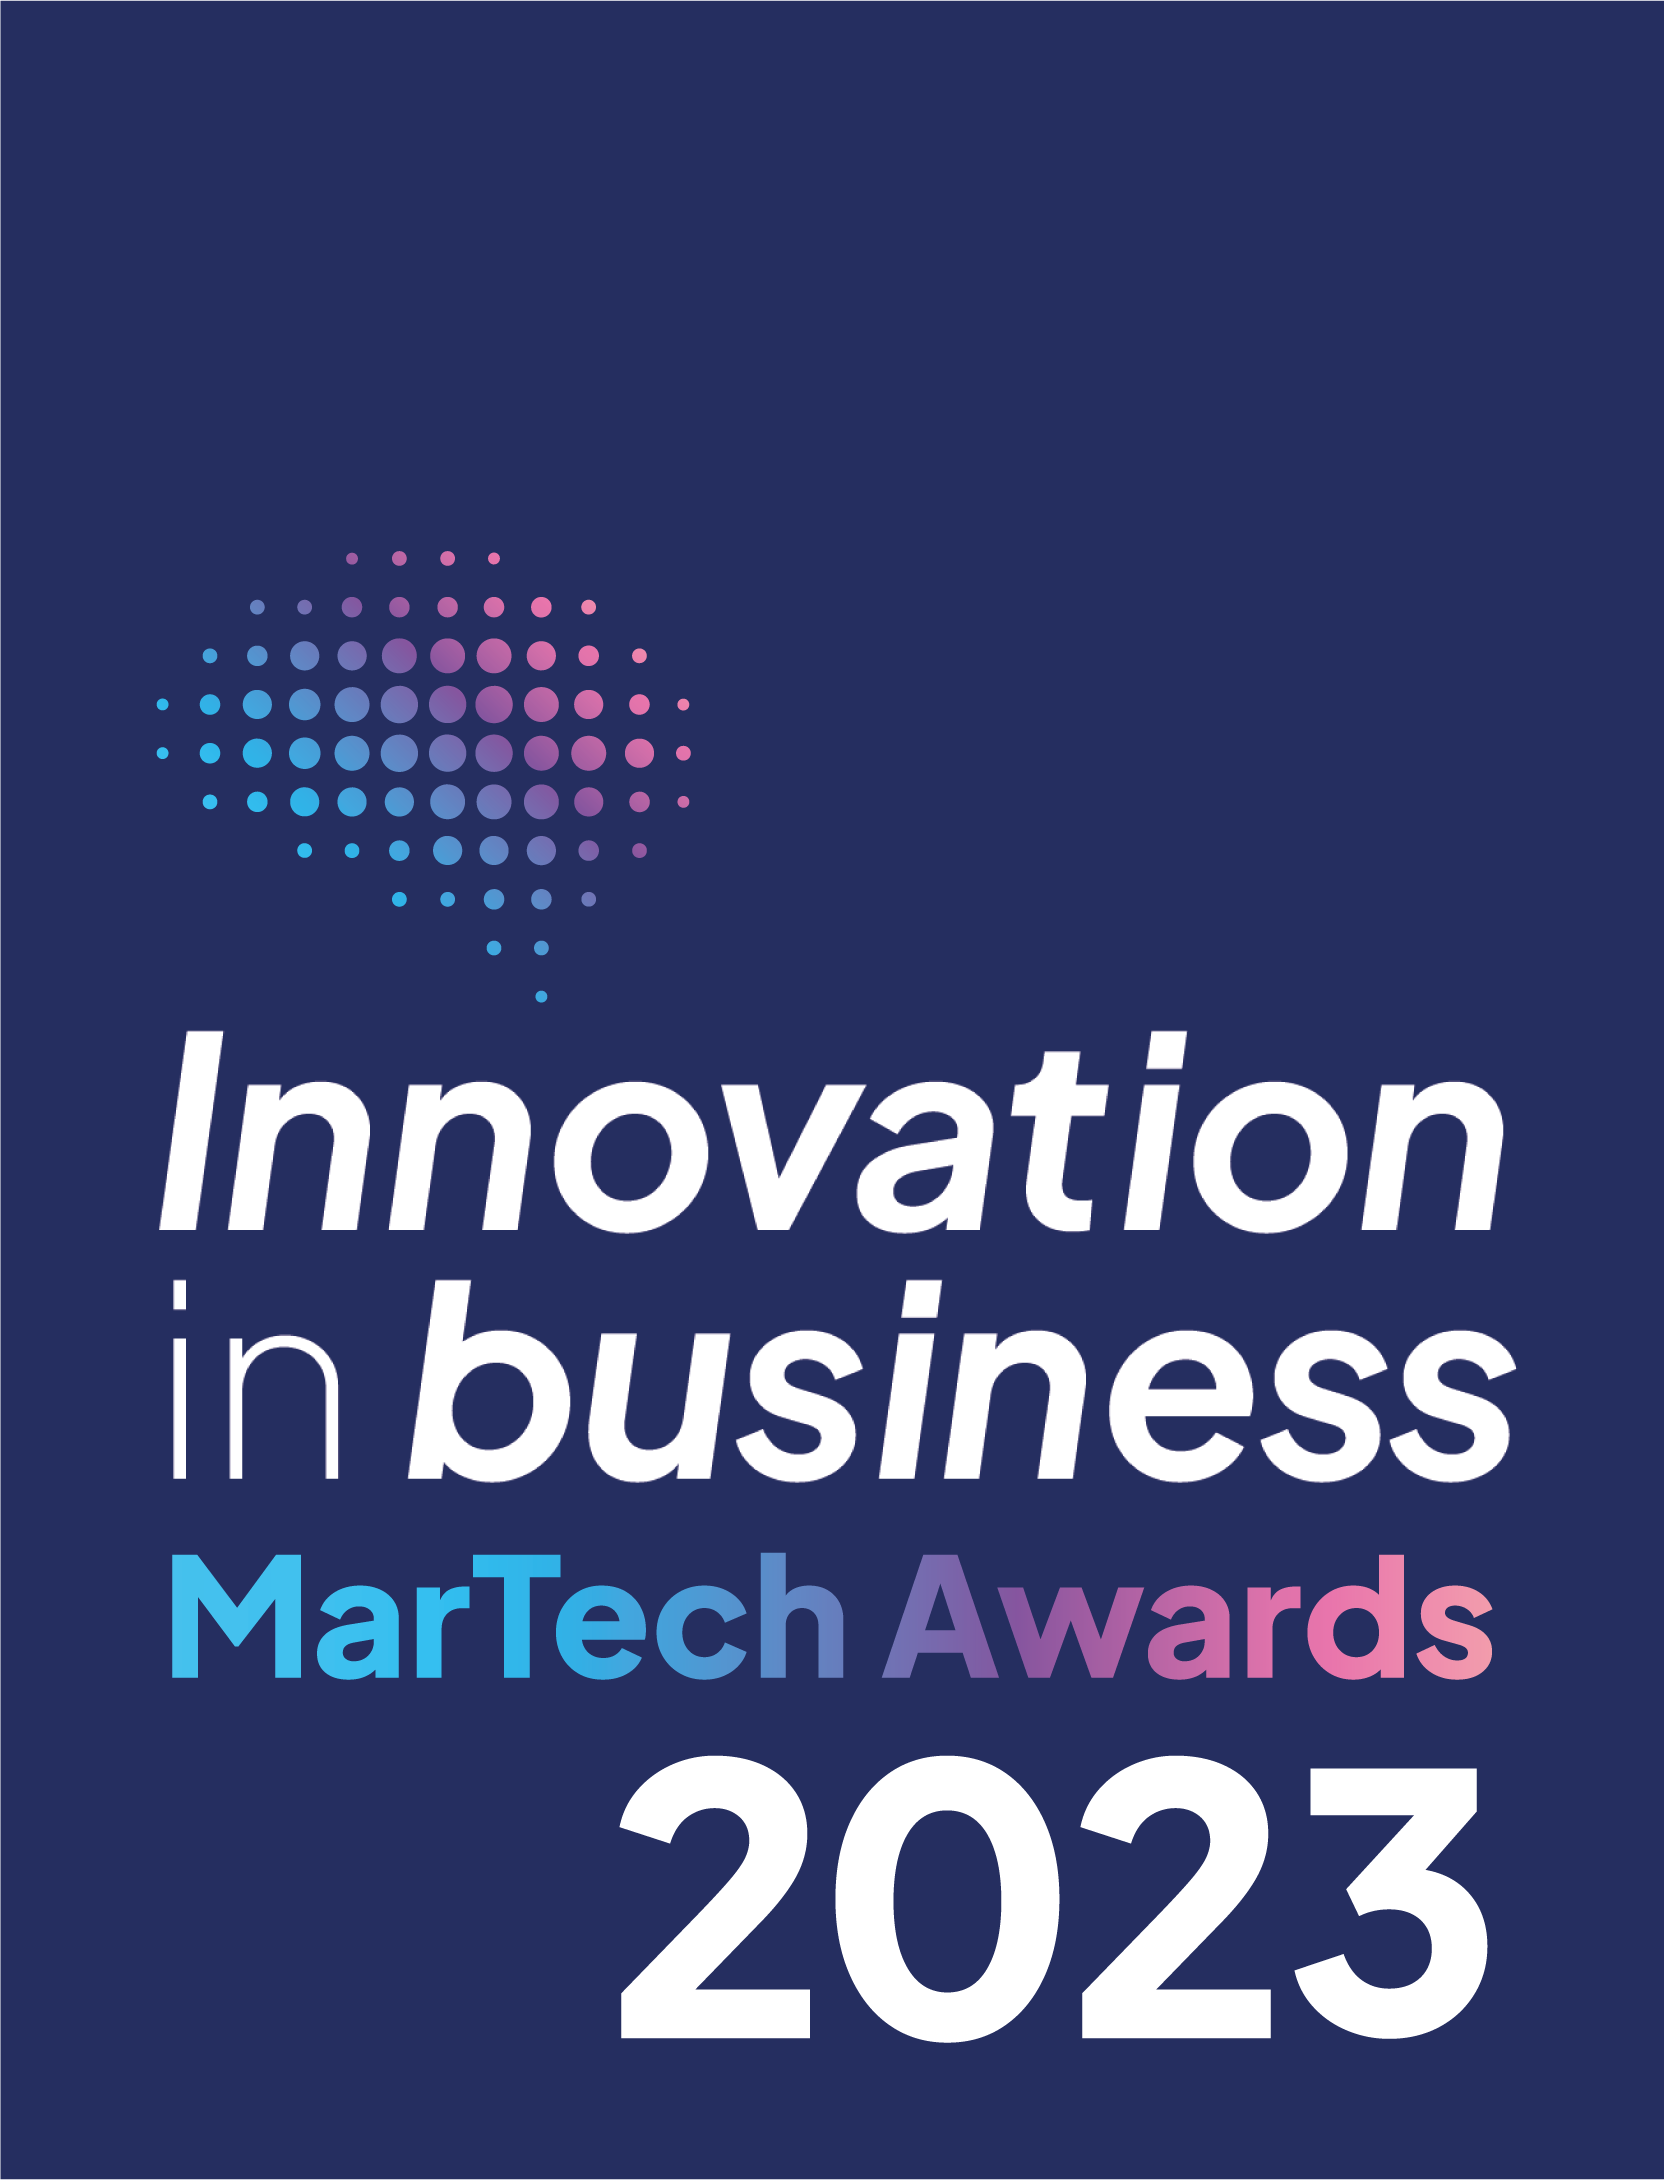 MarTech Award 2023 - Bluebird